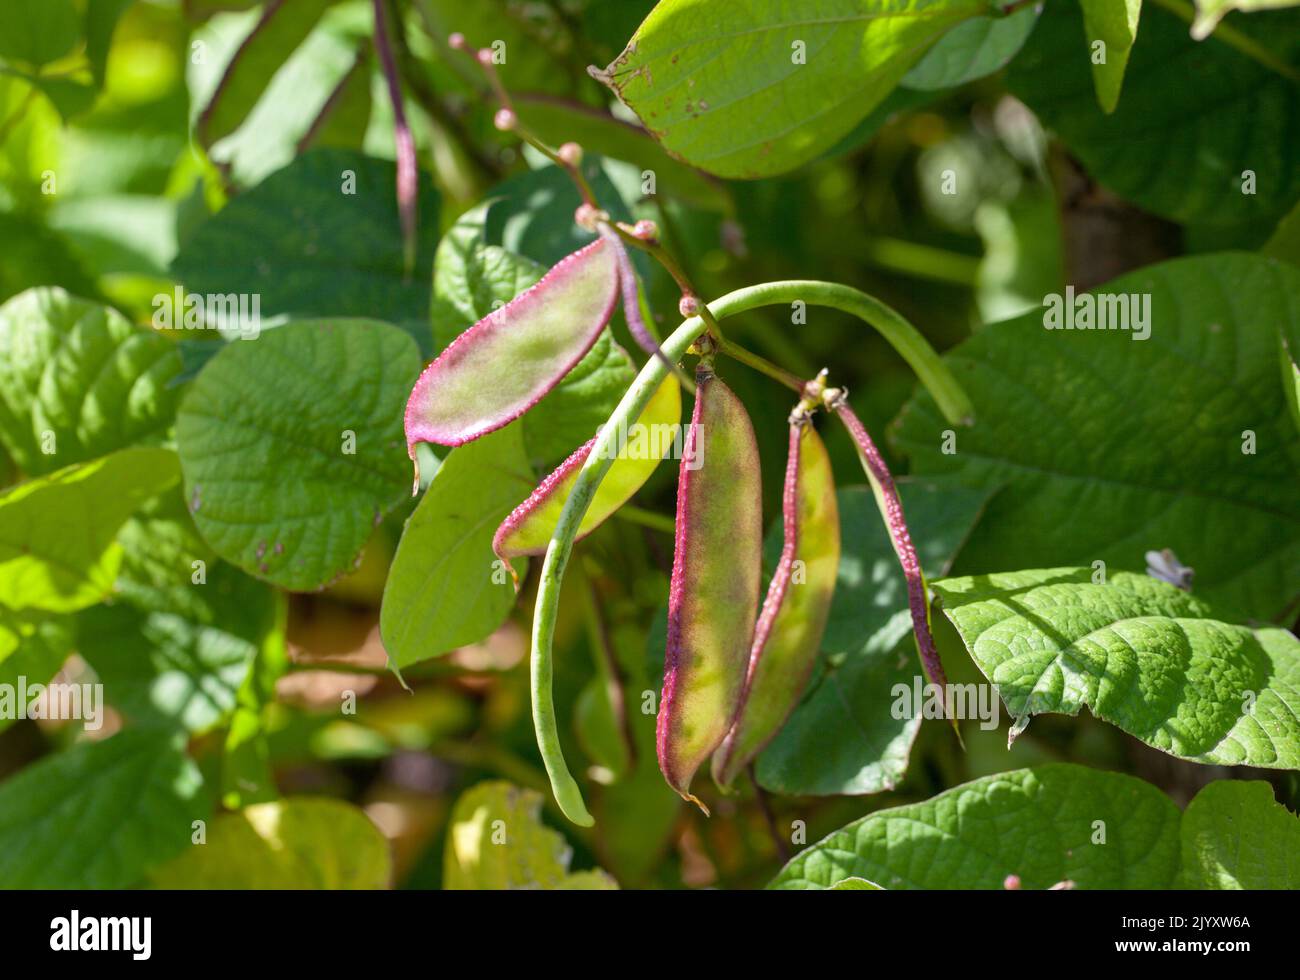 Récolte de mûrissement - gros plan de plants de légumes frais de haricots lablab 'Yings' (Lablab purpureus) qui poussent dans un jardin britannique Banque D'Images